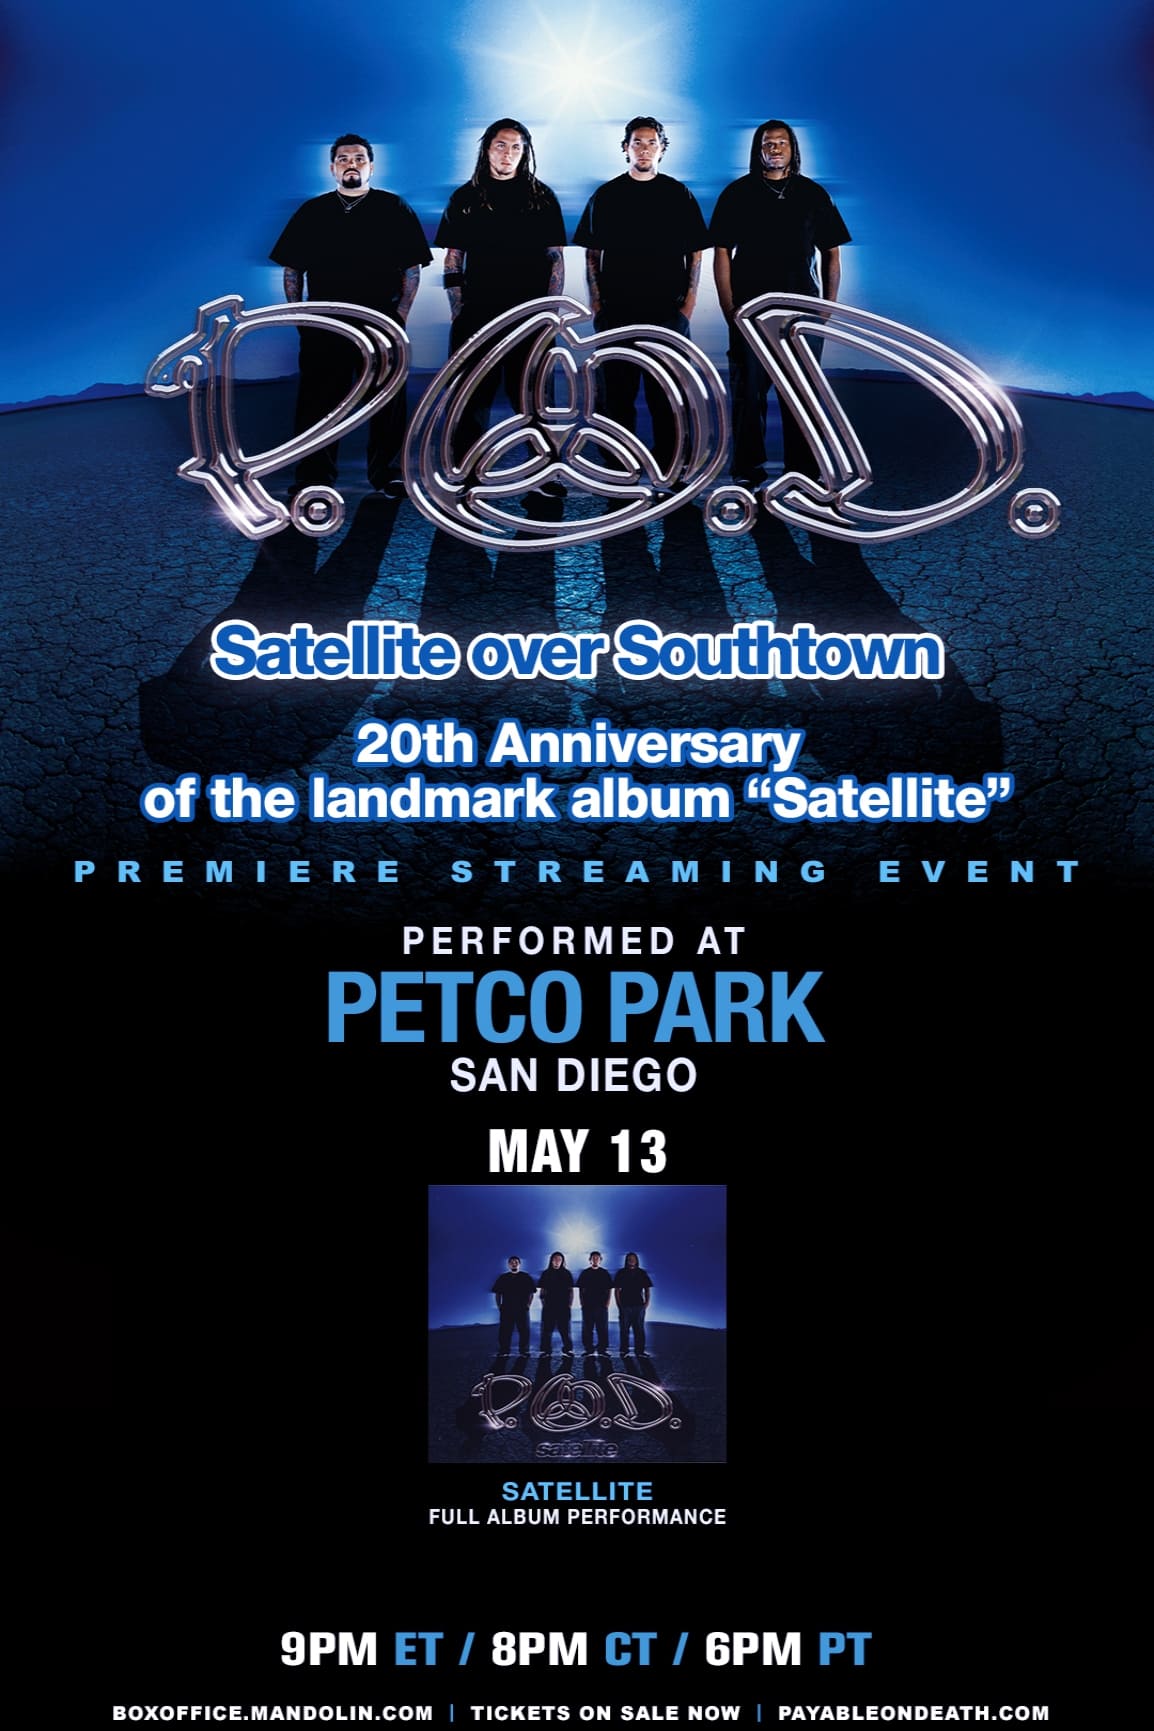 P.O.D. - Satellite Over Southtown: "Satellite" Full Album Performance